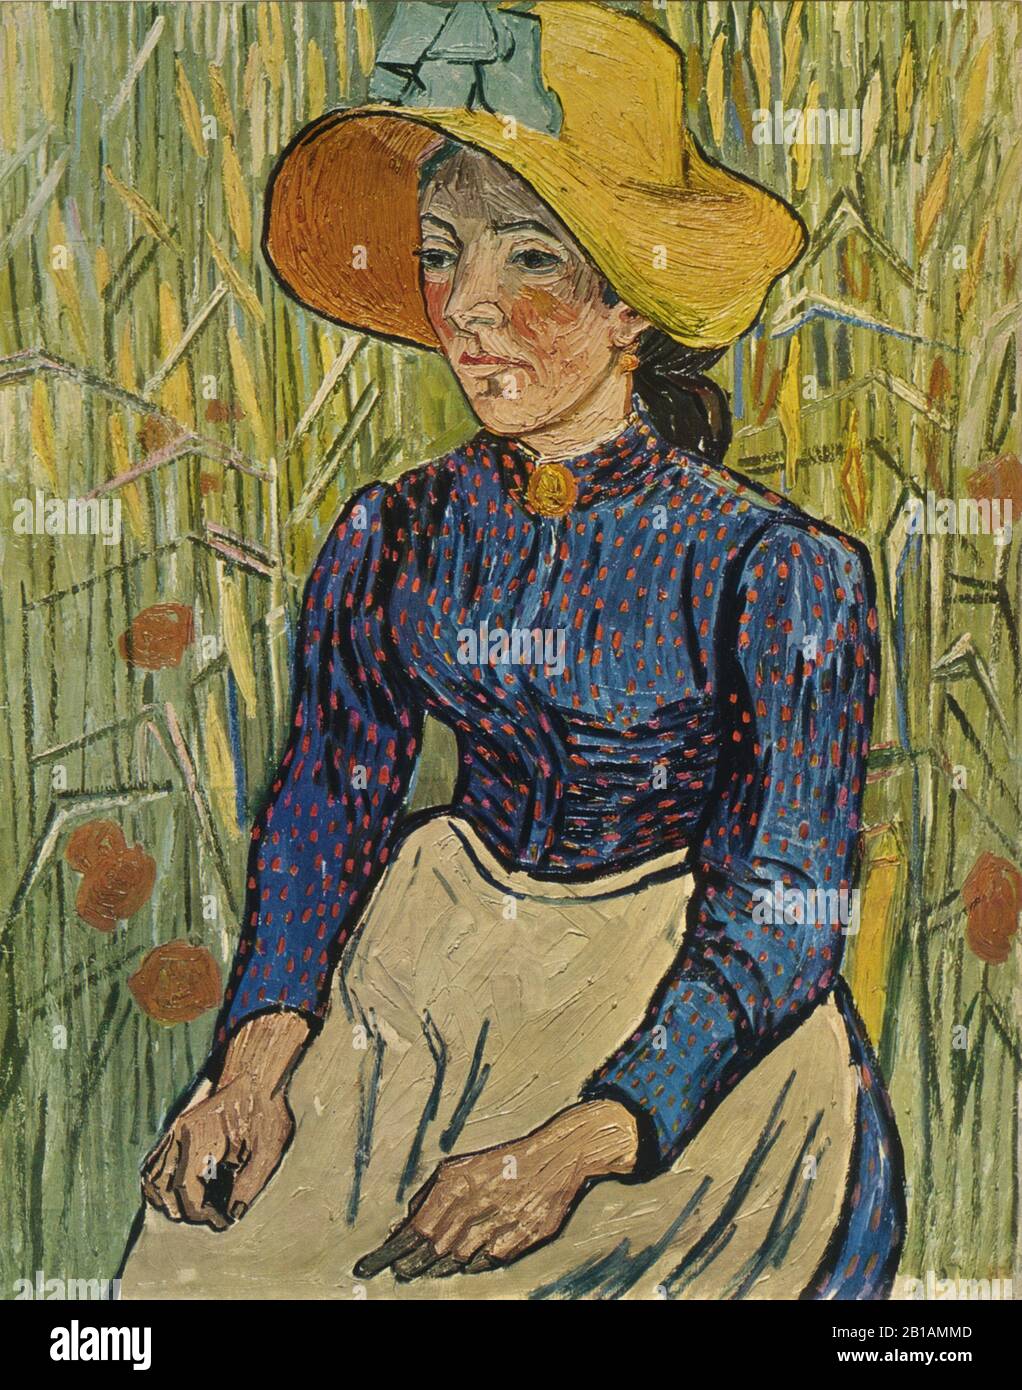 Bauernmädchen 1890 Gemälde von Vincent van Gogh - Sehr hohe Auflösung und Qualitätsbild Stockfoto